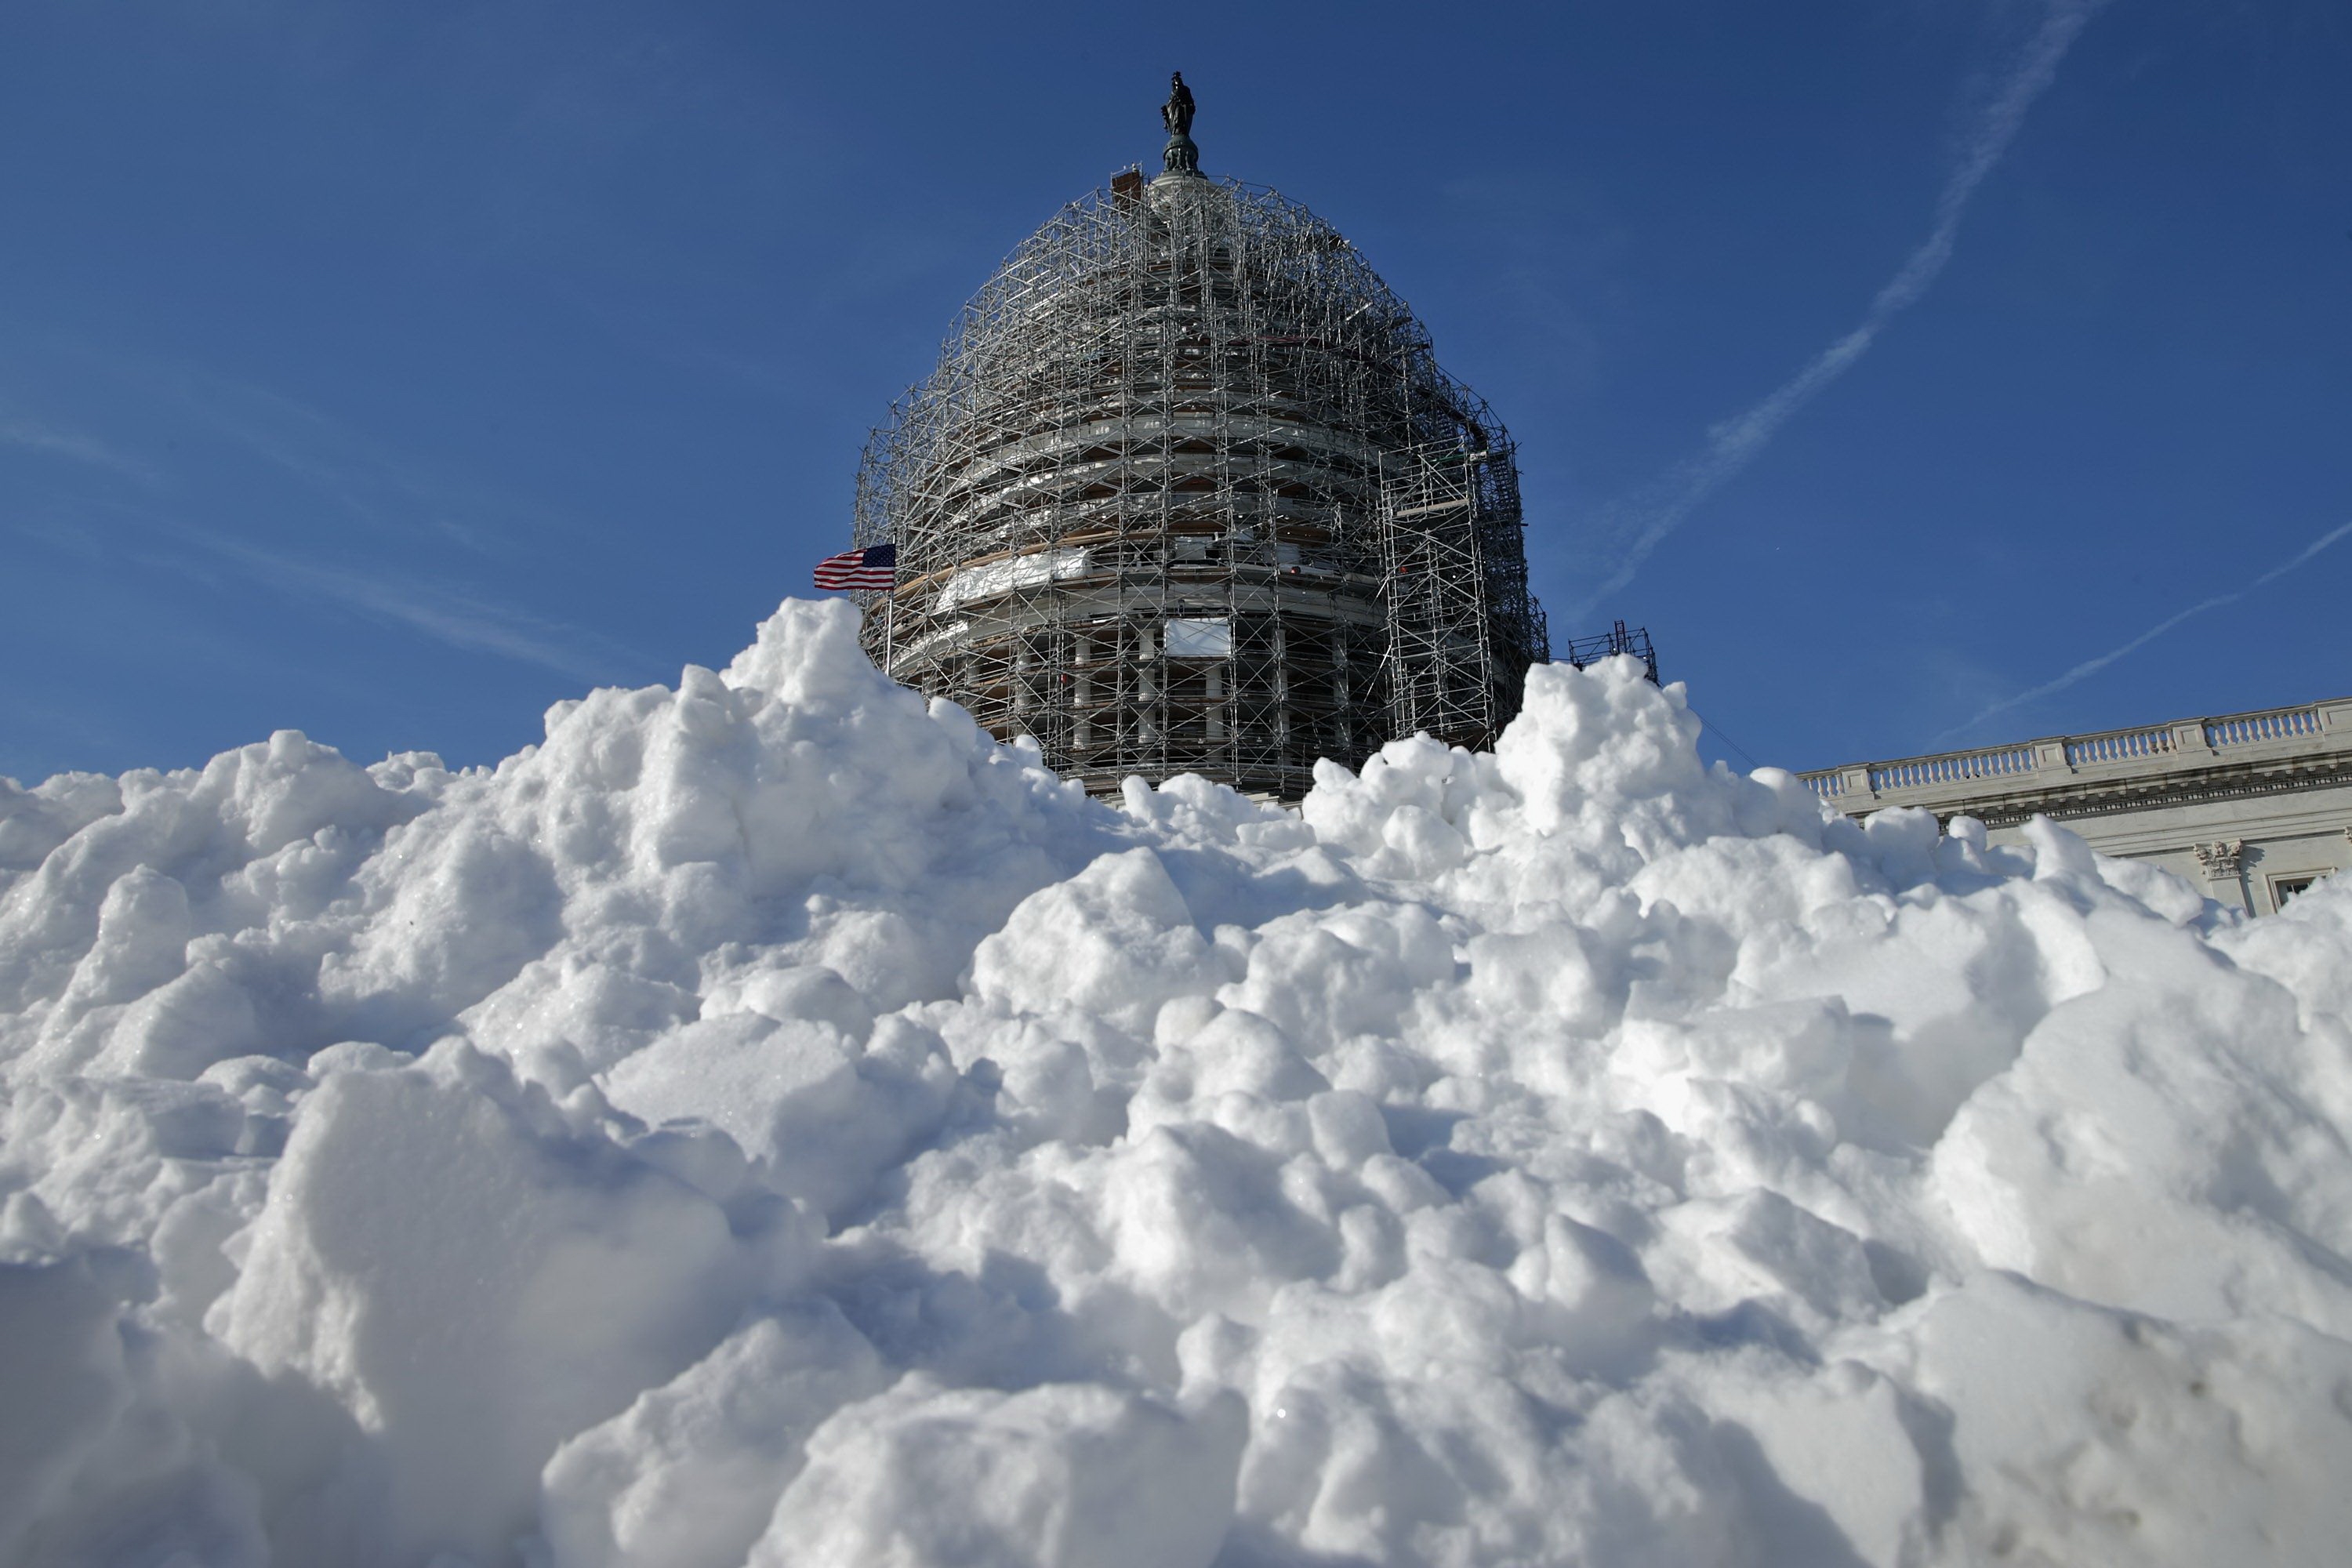 Tuyết phủ kín đường phố xung quanh trụ sở quốc hội Mỹ ngày 21.1 (giờ địa phương) - Ảnh: AFP